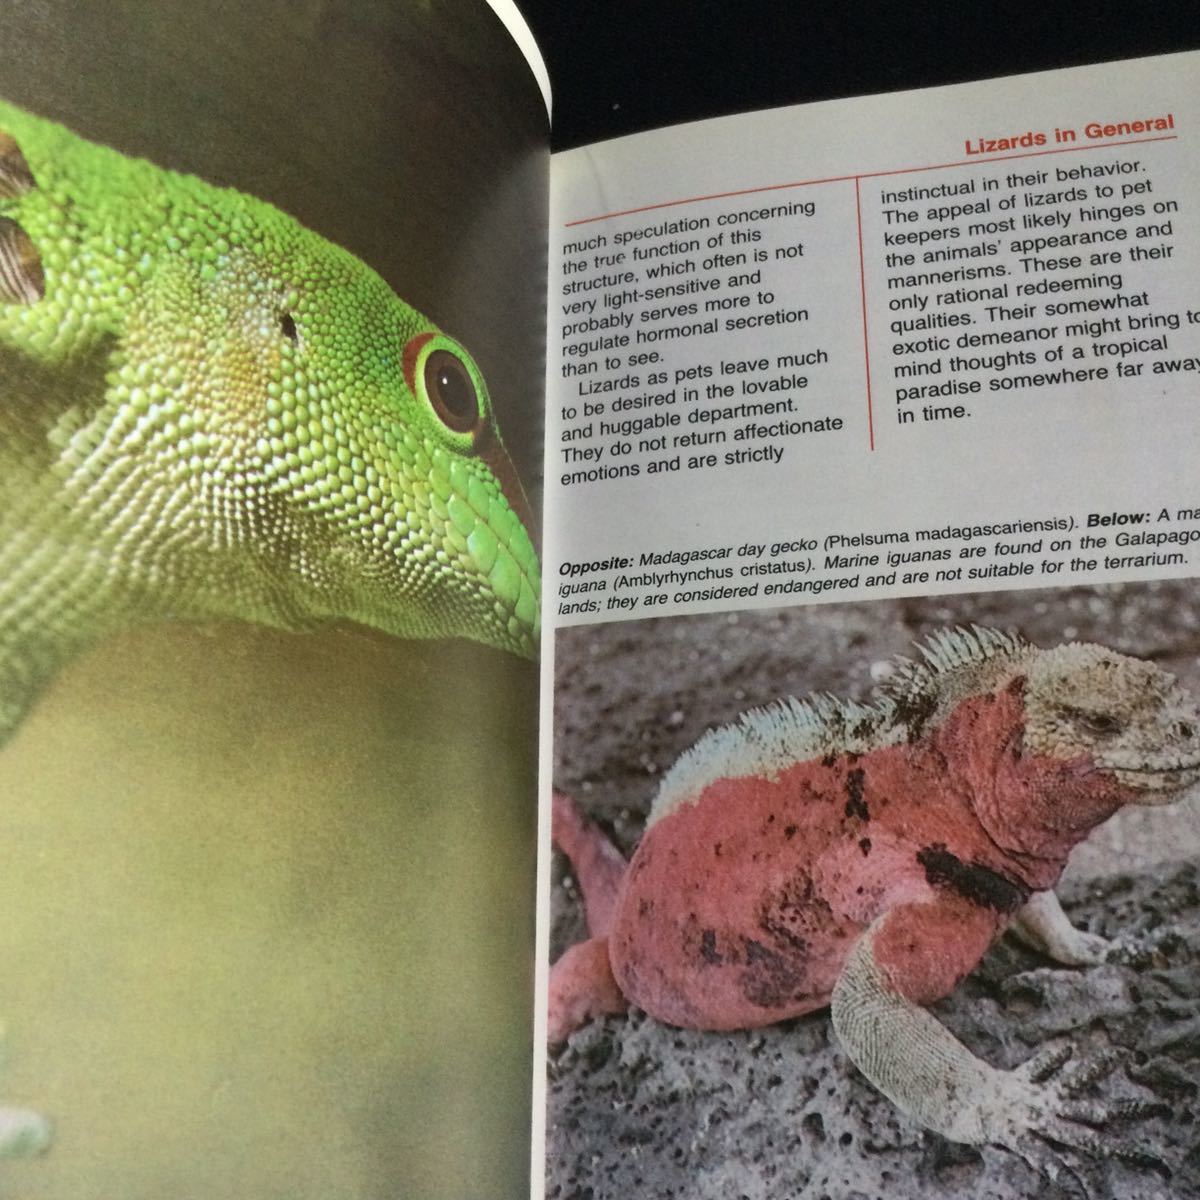  рептилии иностранная книга английский язык иллюстрированная книга ящерица ящерица Lizards путеводитель животное 